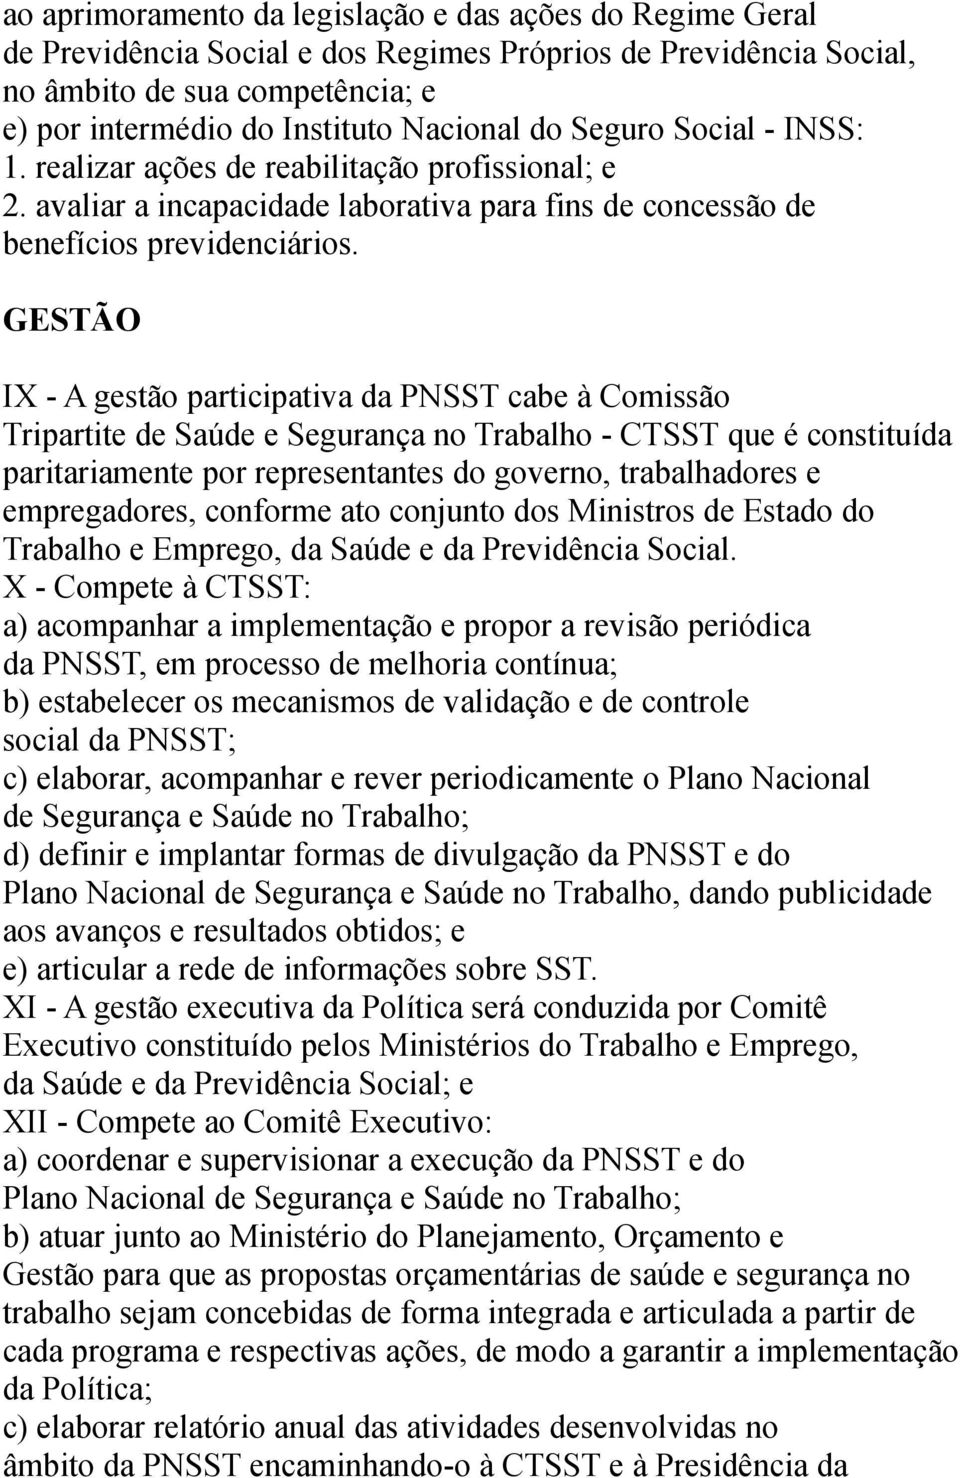 GESTÃO IX - A gestão participativa da PNSST cabe à Comissão Tripartite de Saúde e Segurança no Trabalho - CTSST que é constituída paritariamente por representantes do governo, trabalhadores e